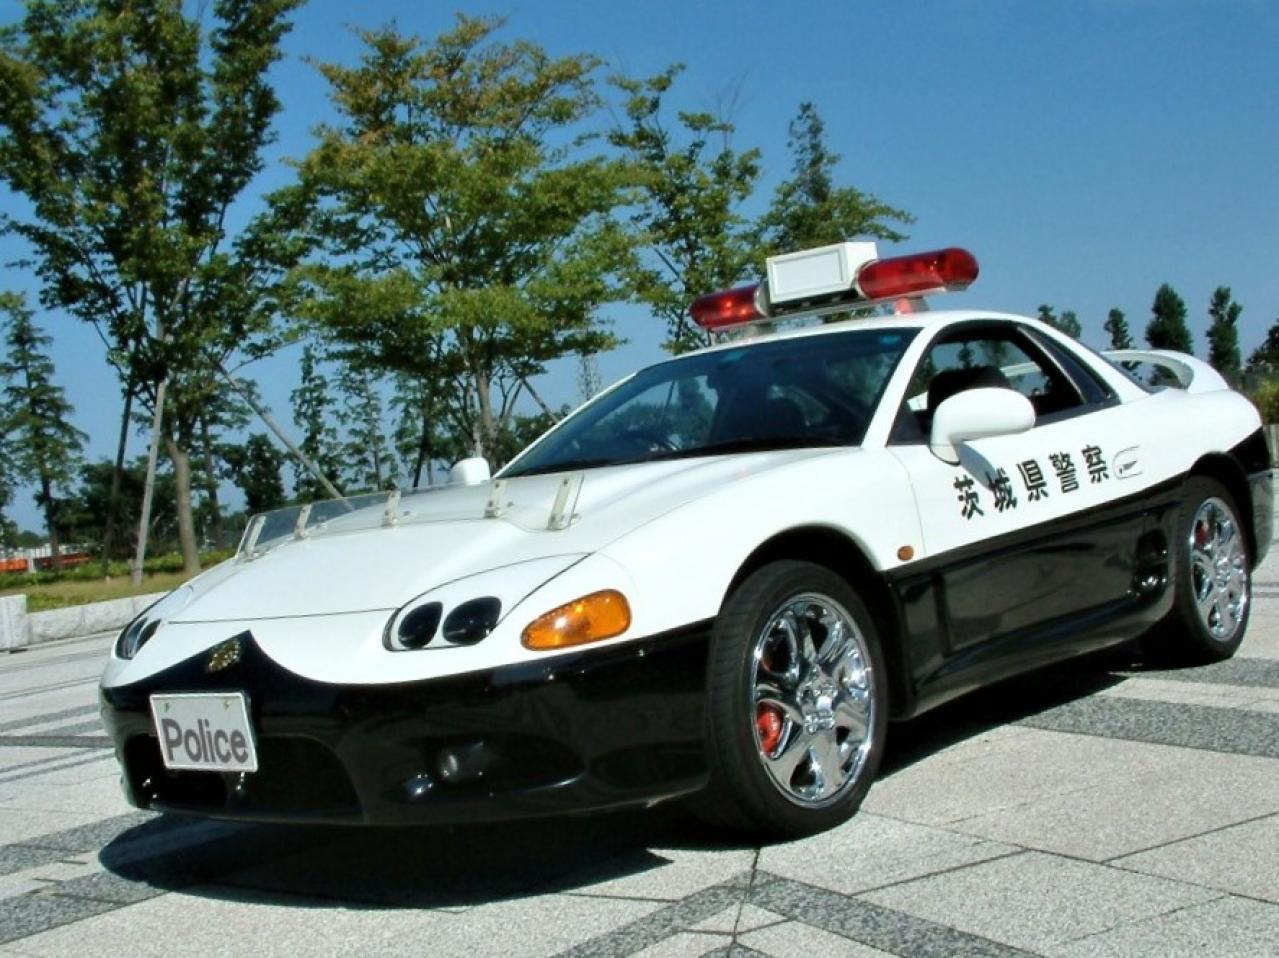 ちょっとイケてる茨城県警のホームページに三菱gtoパトカーの 壁紙 を発見 しかもレーダーパトカー 仕様 交通取締情報 Motor Fan モーターファン